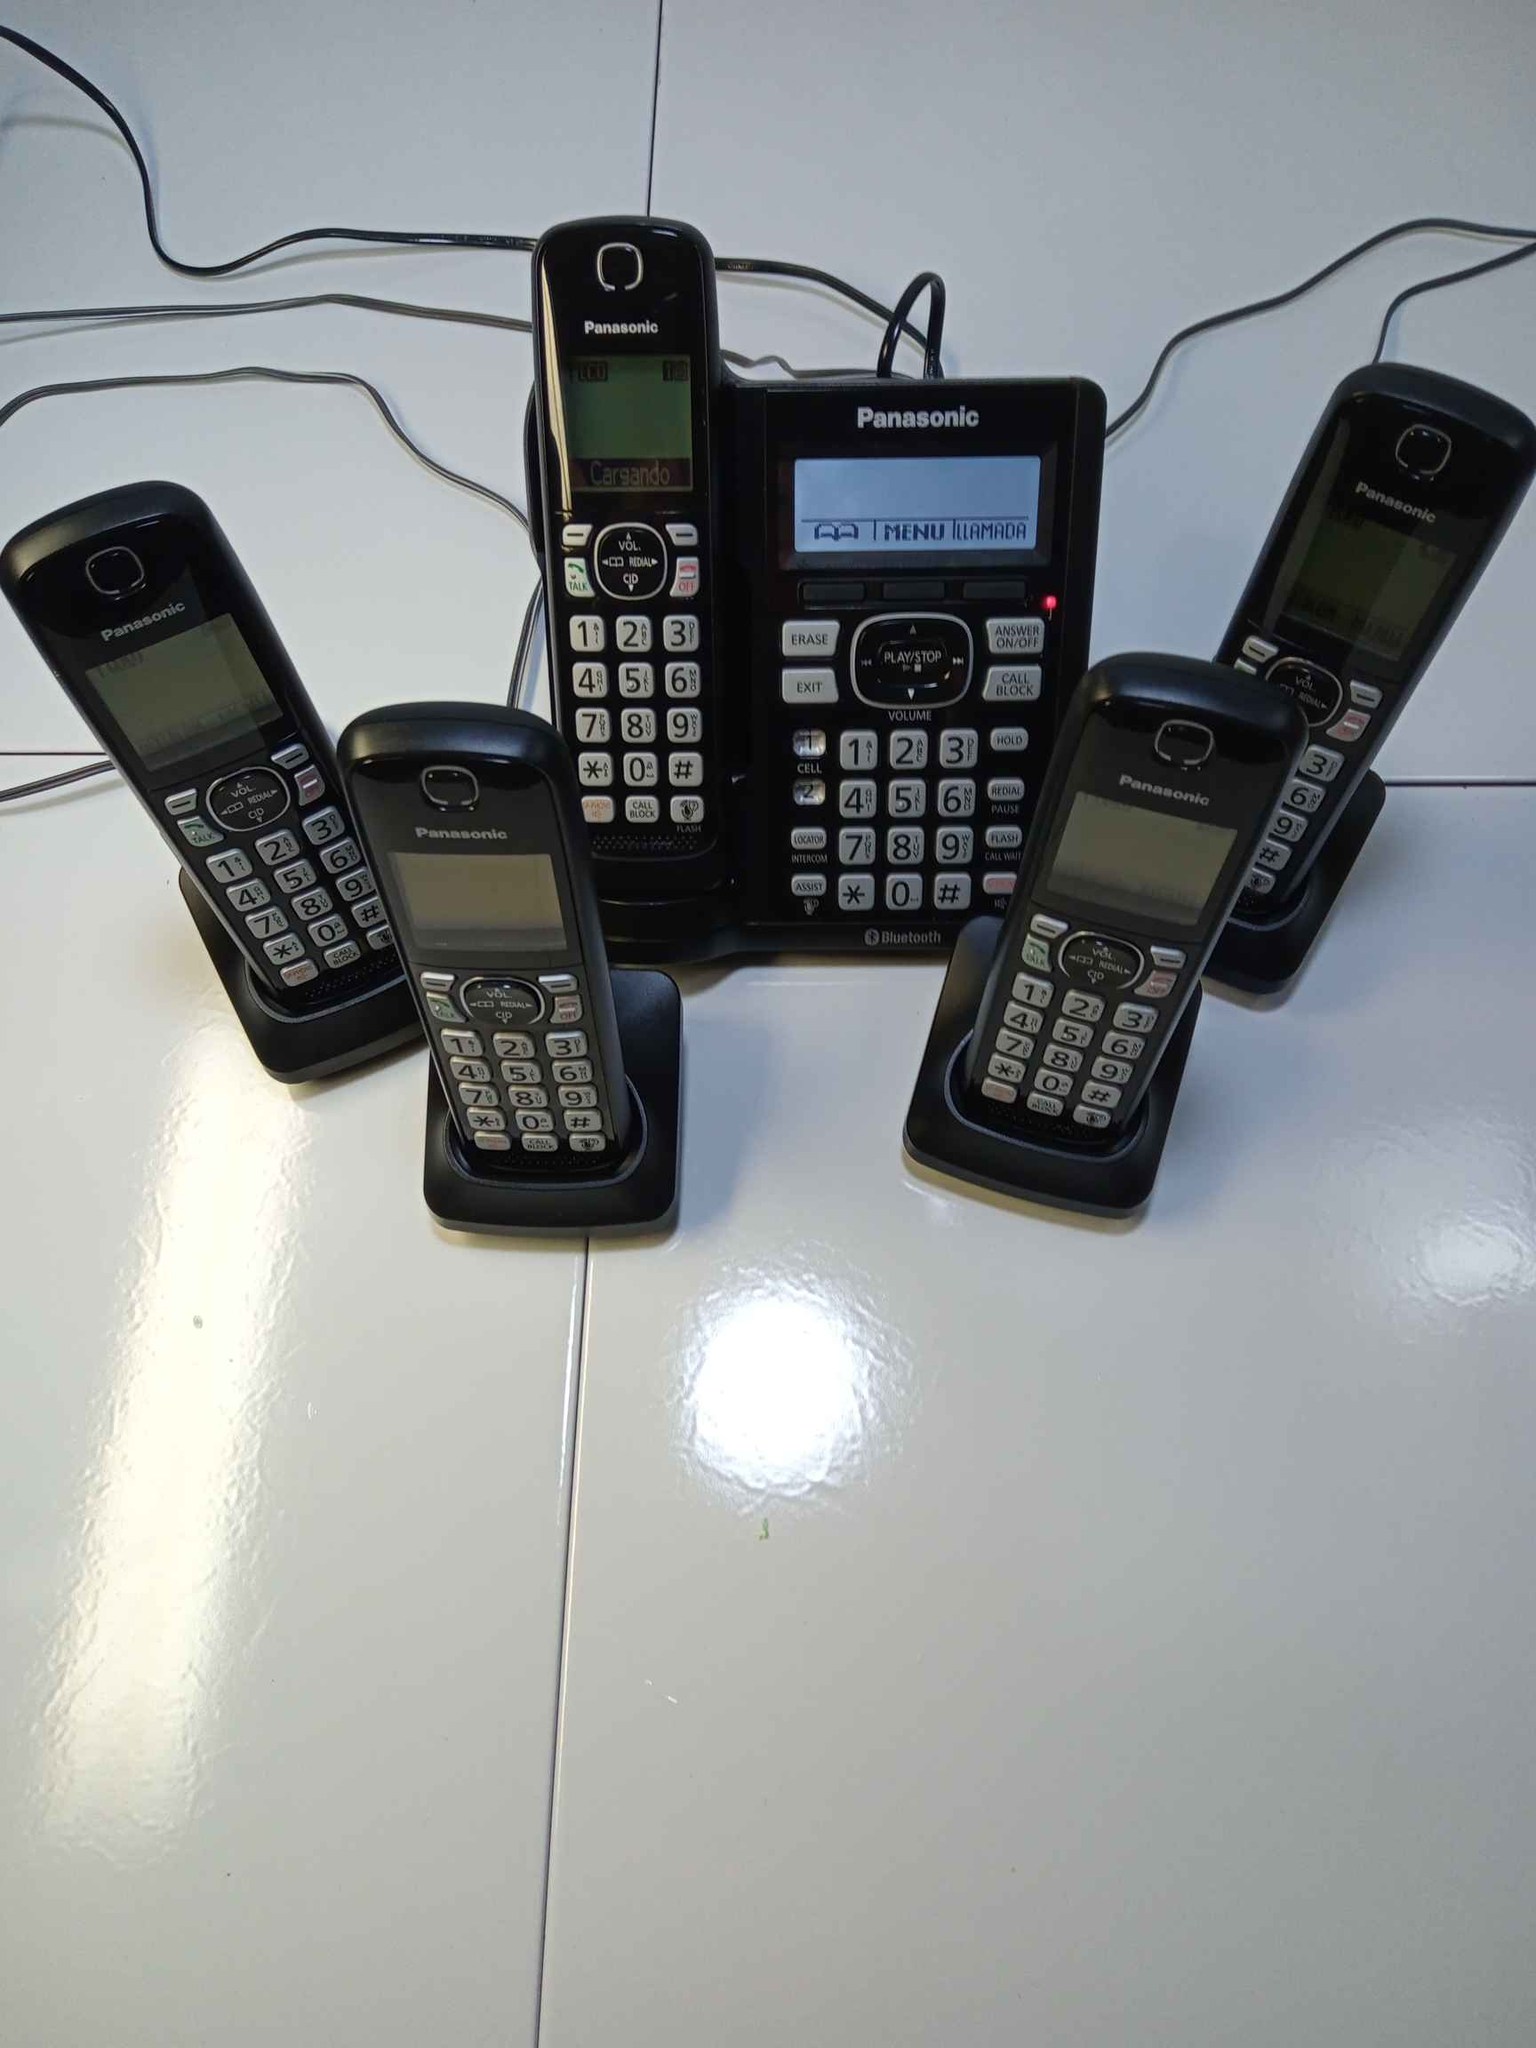 Ganga remato lindos y exclusivos teléfonos inalámbricos de uso profesional con tecnología Bluetooth